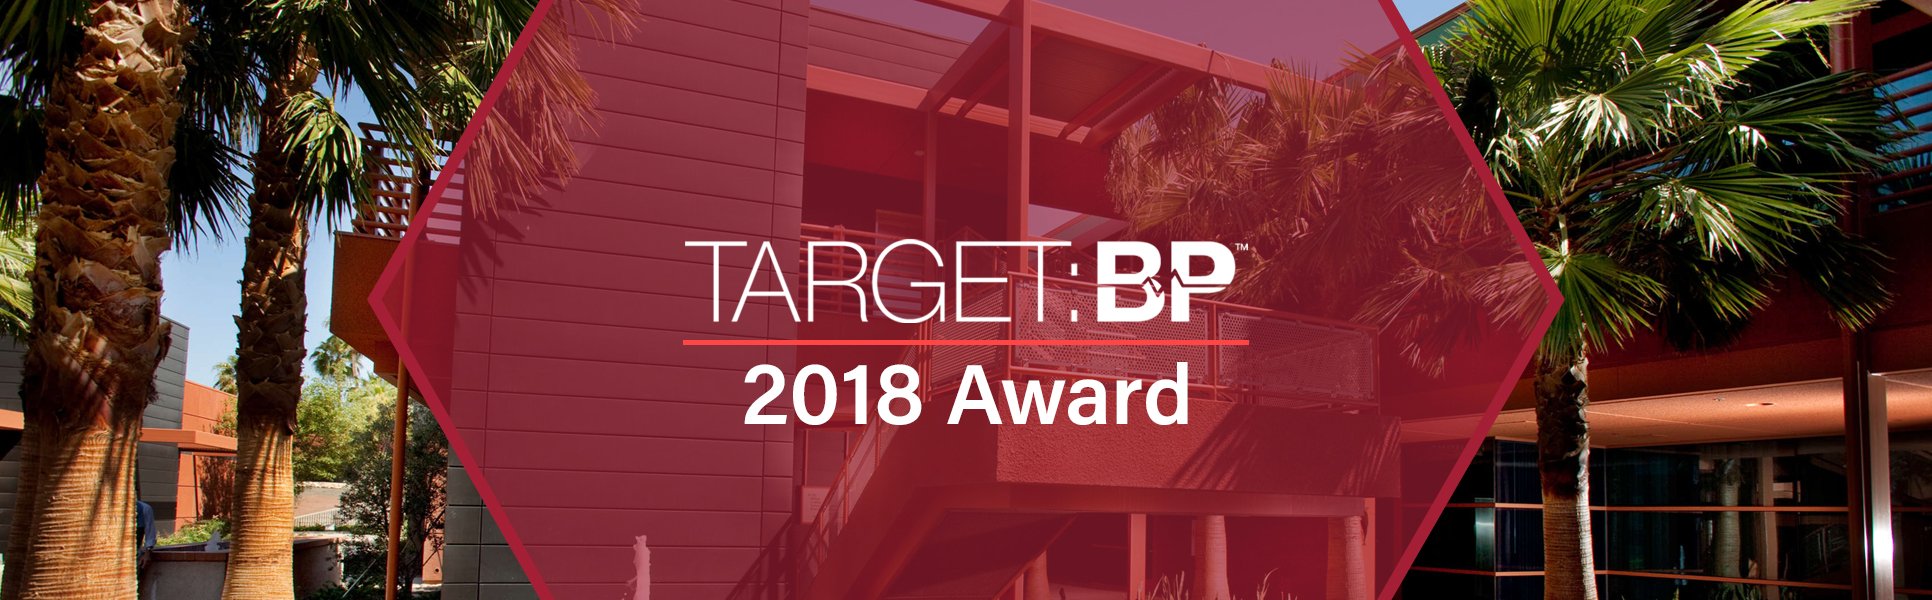 Target BP Award 2018 | DOHC